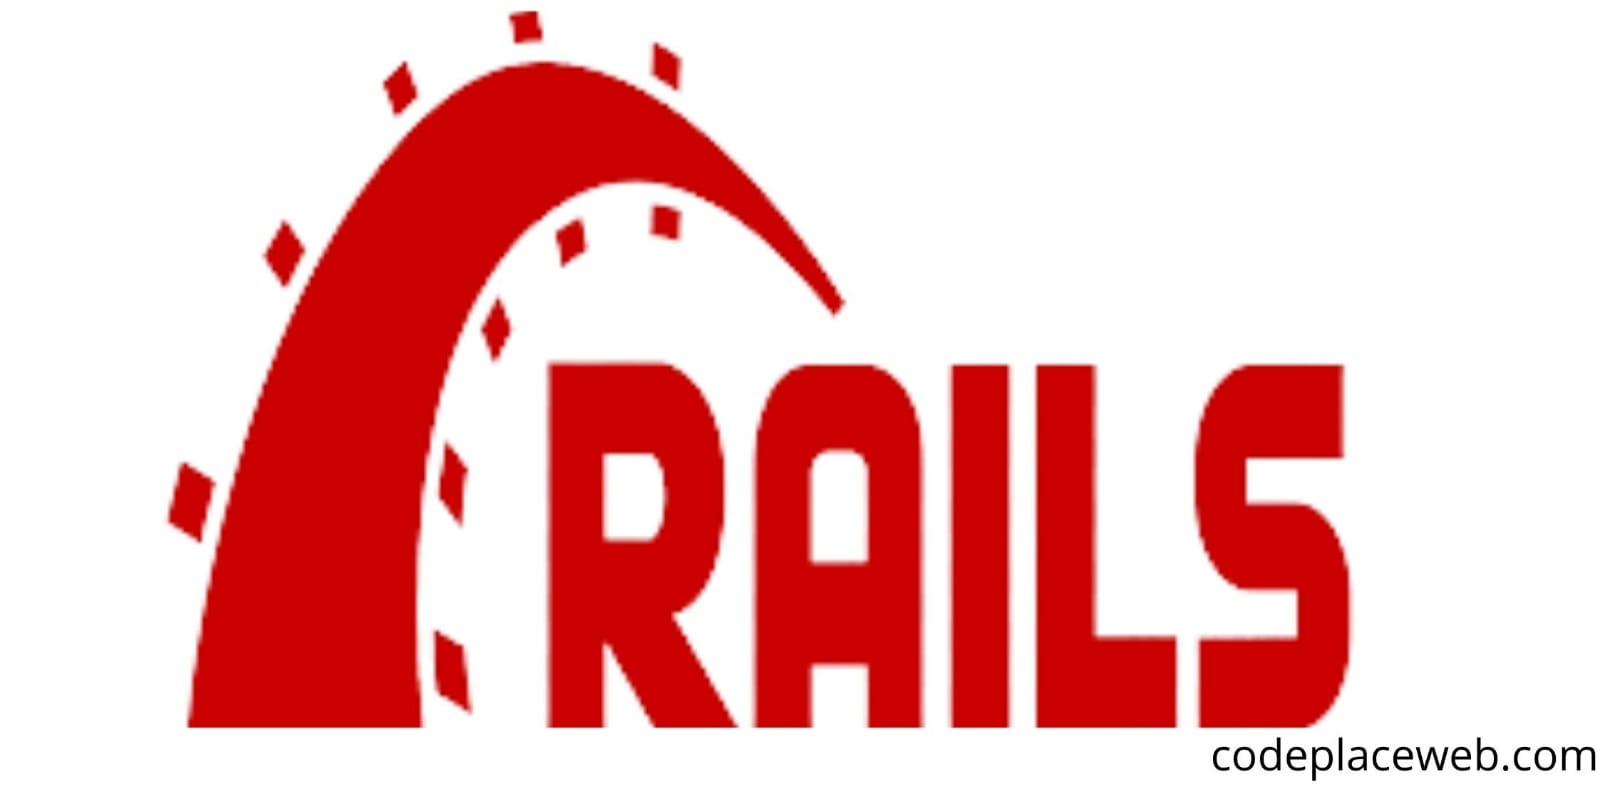 Ruby Rails